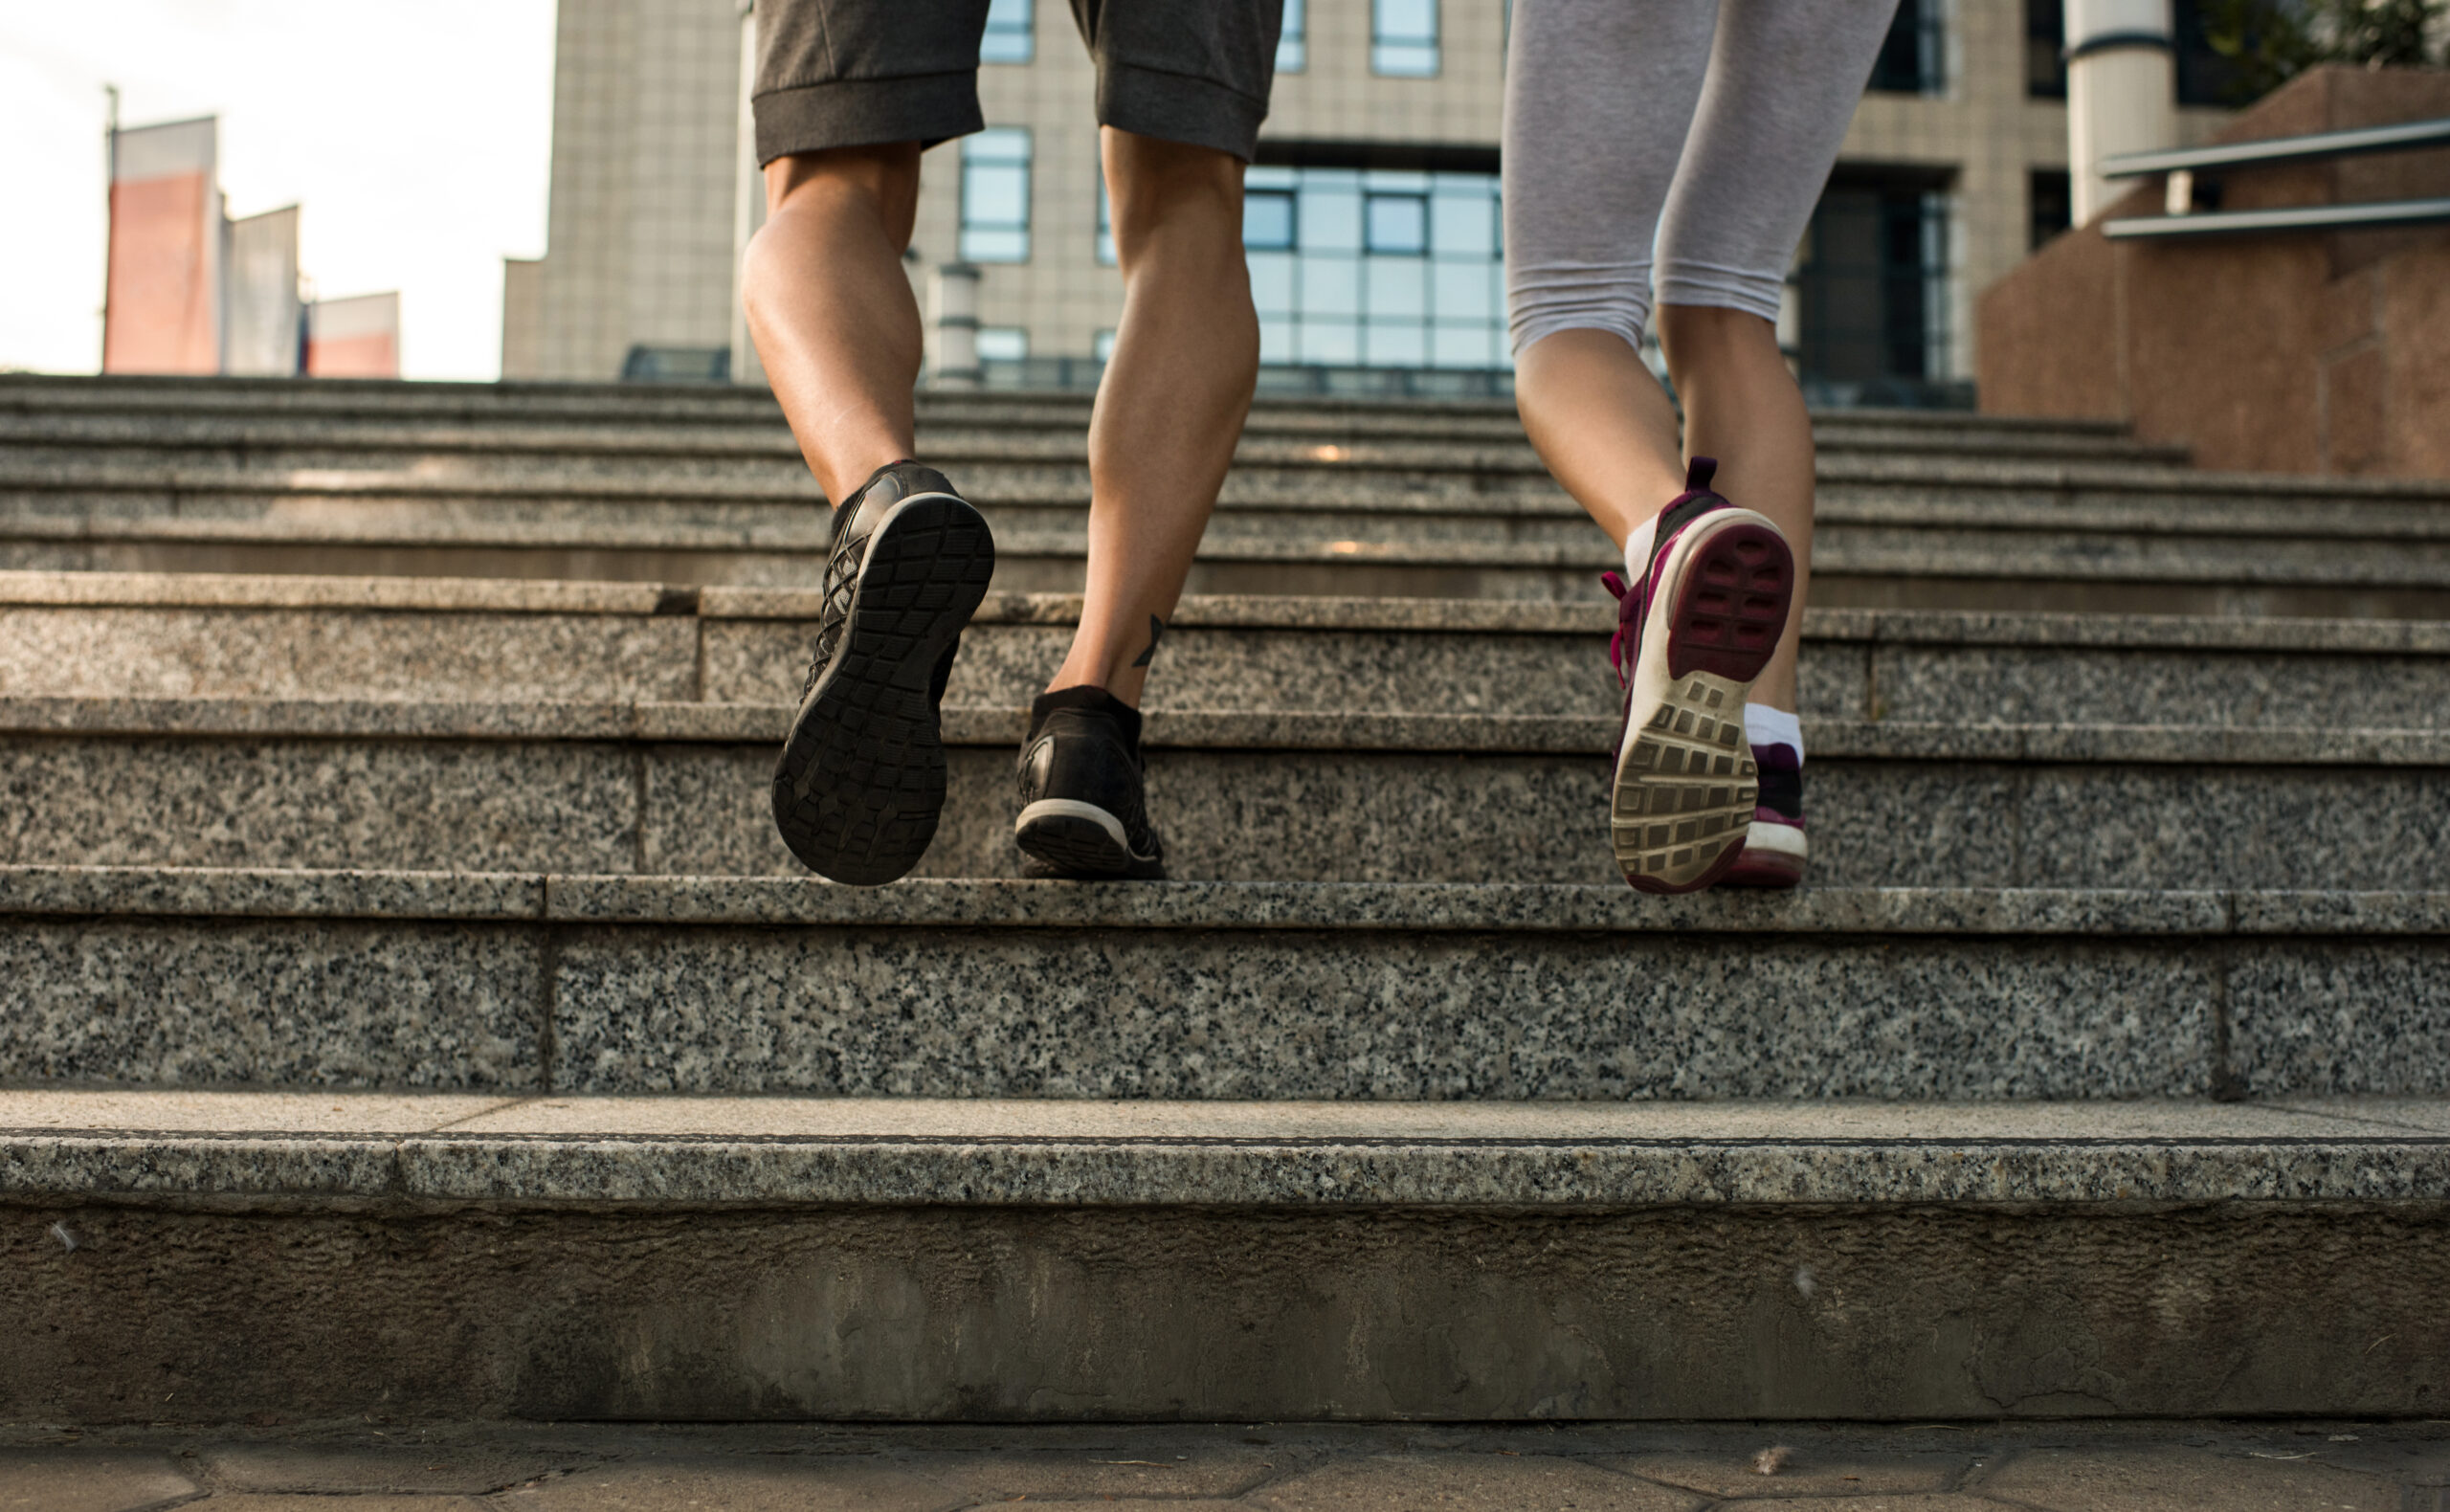 Escadas podem ajudar a prevenir doenças cardíacas